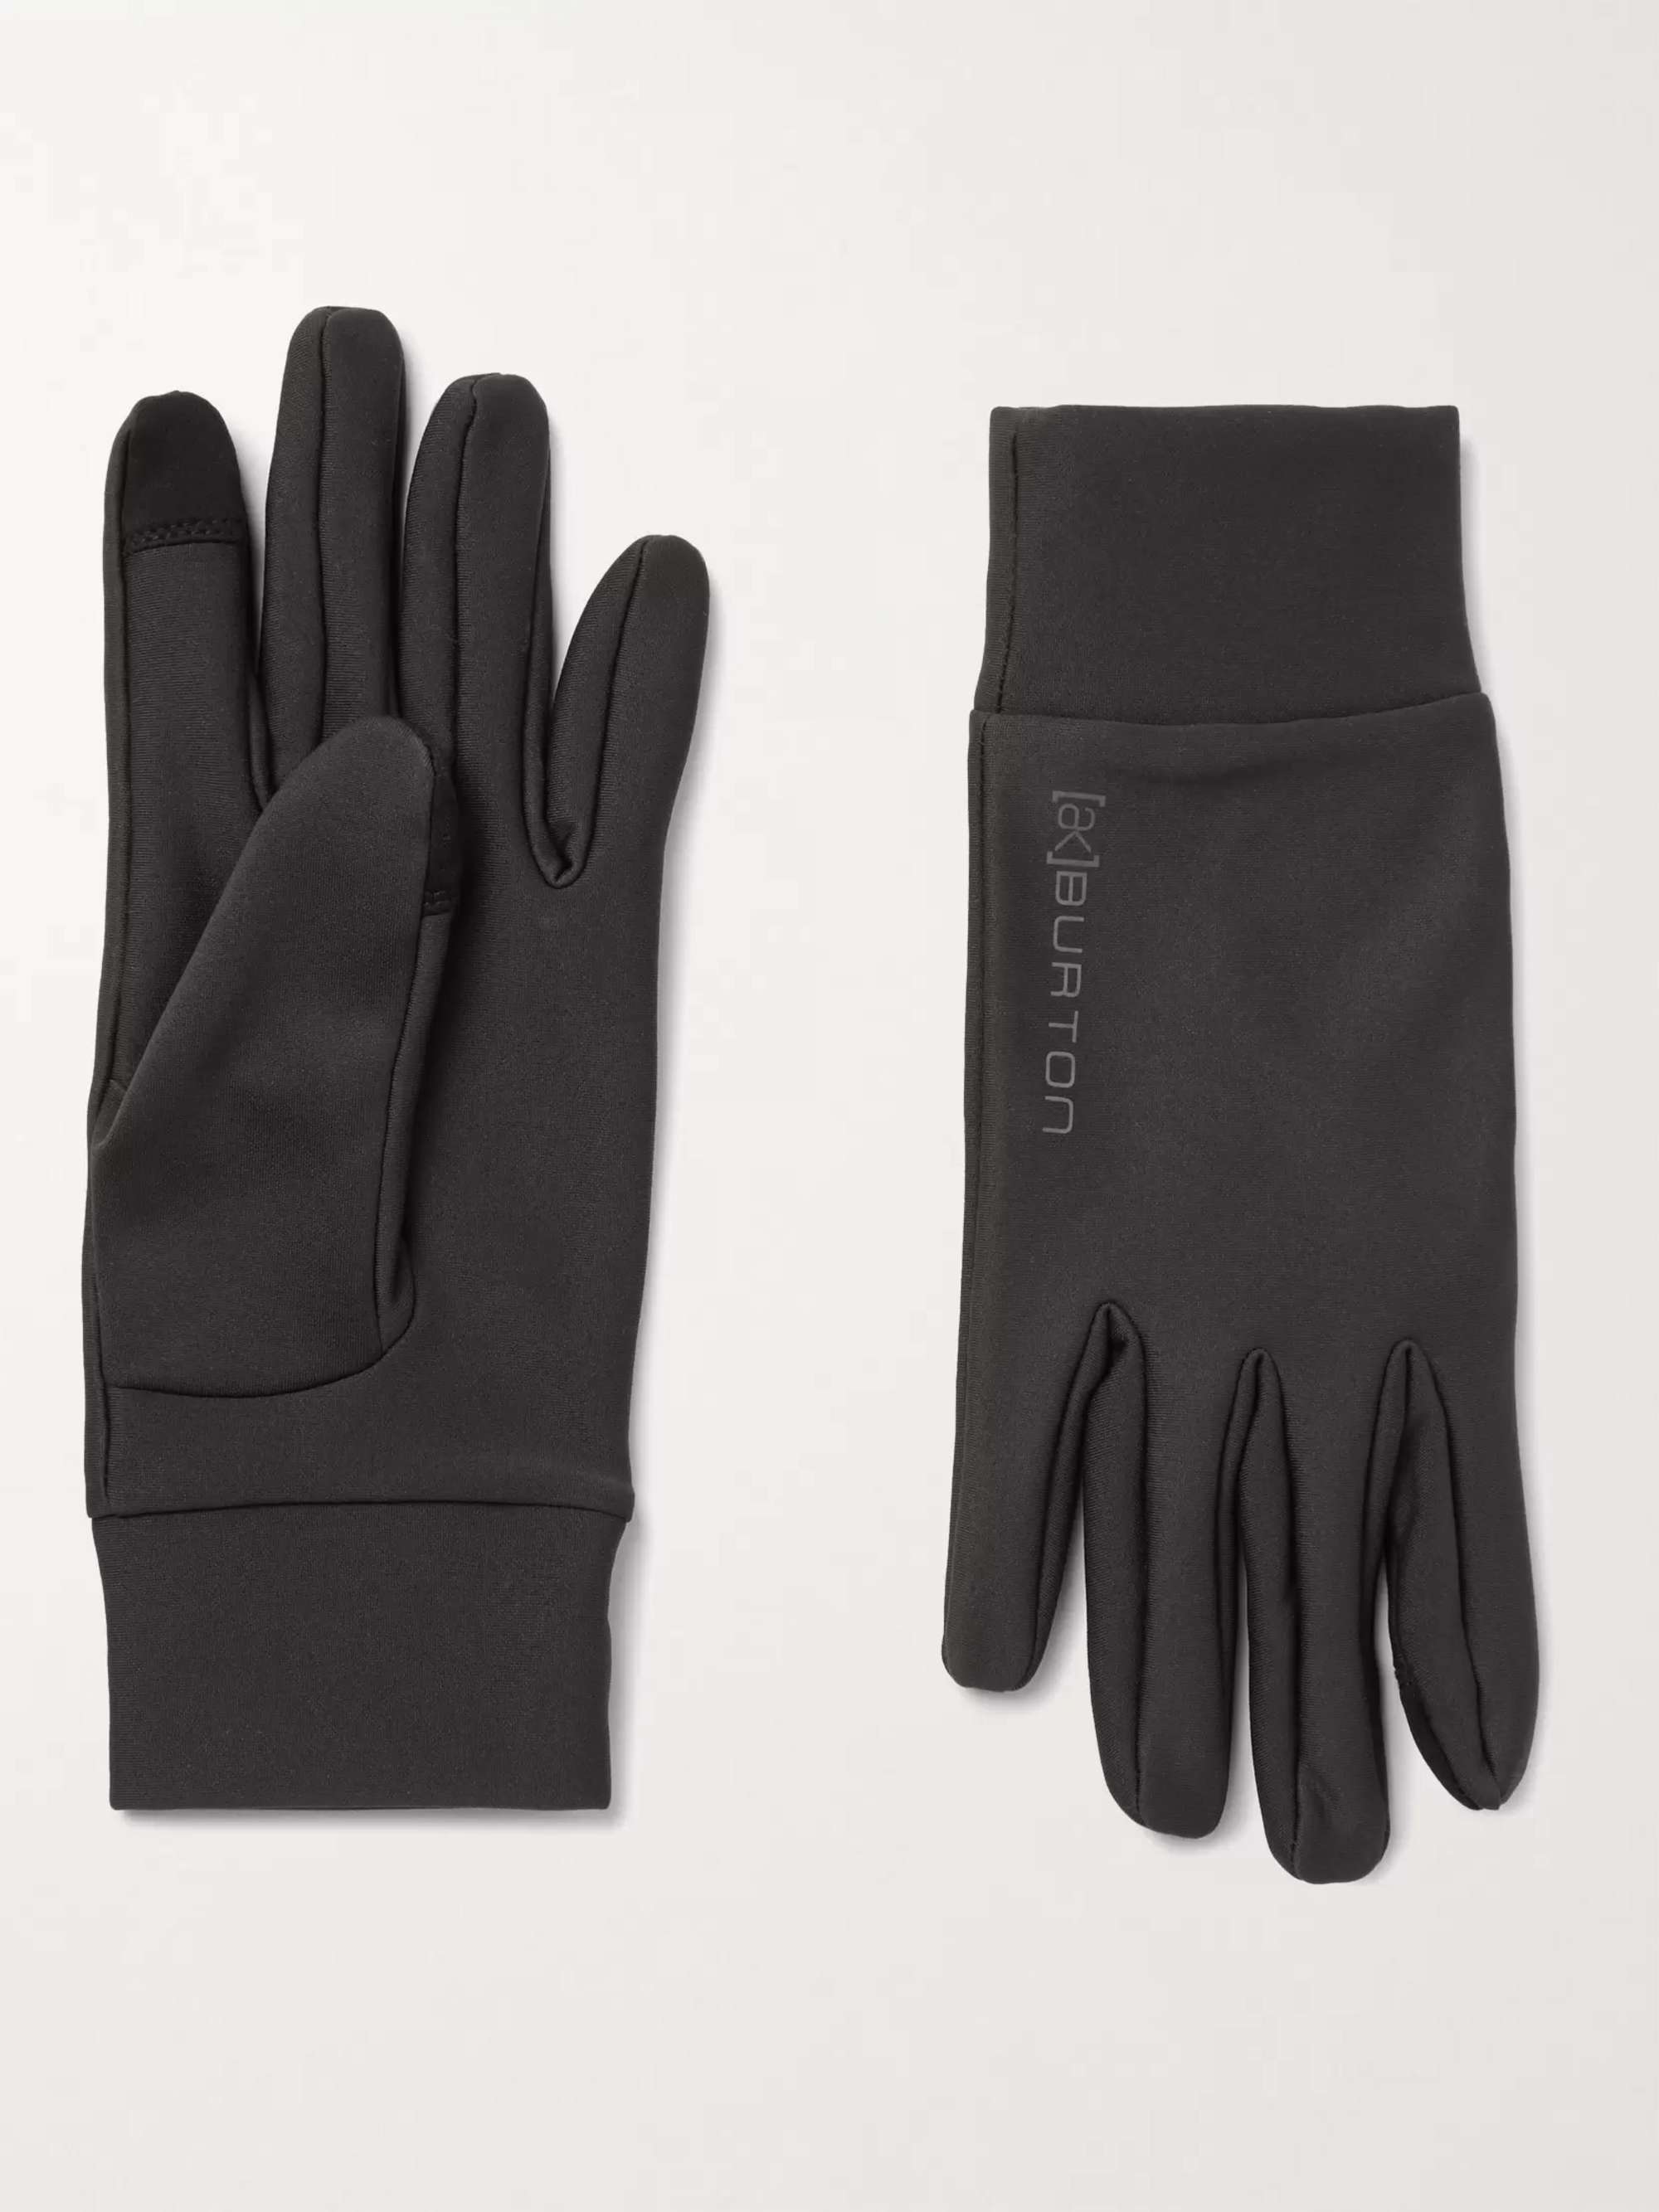 BURTON [ak] Hover GORE-TEX 3L and Leather Ski Gloves